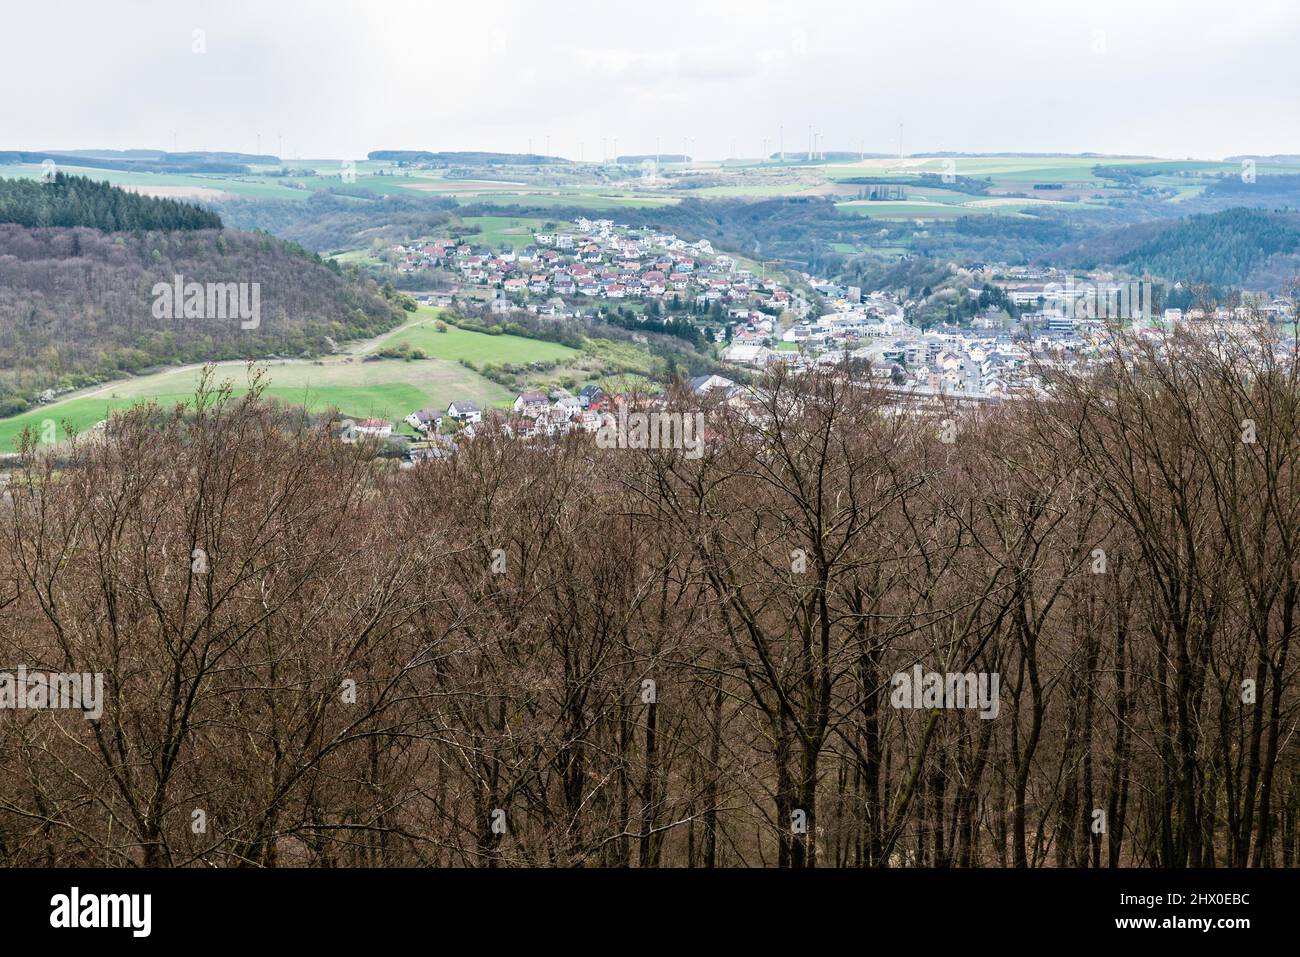 Vista panoramica sulla valle del fiume Prum, i boschi, il villaggio di Irrel e il parco naturale della Gola del Devils Teufelsschlucht, G. Foto Stock